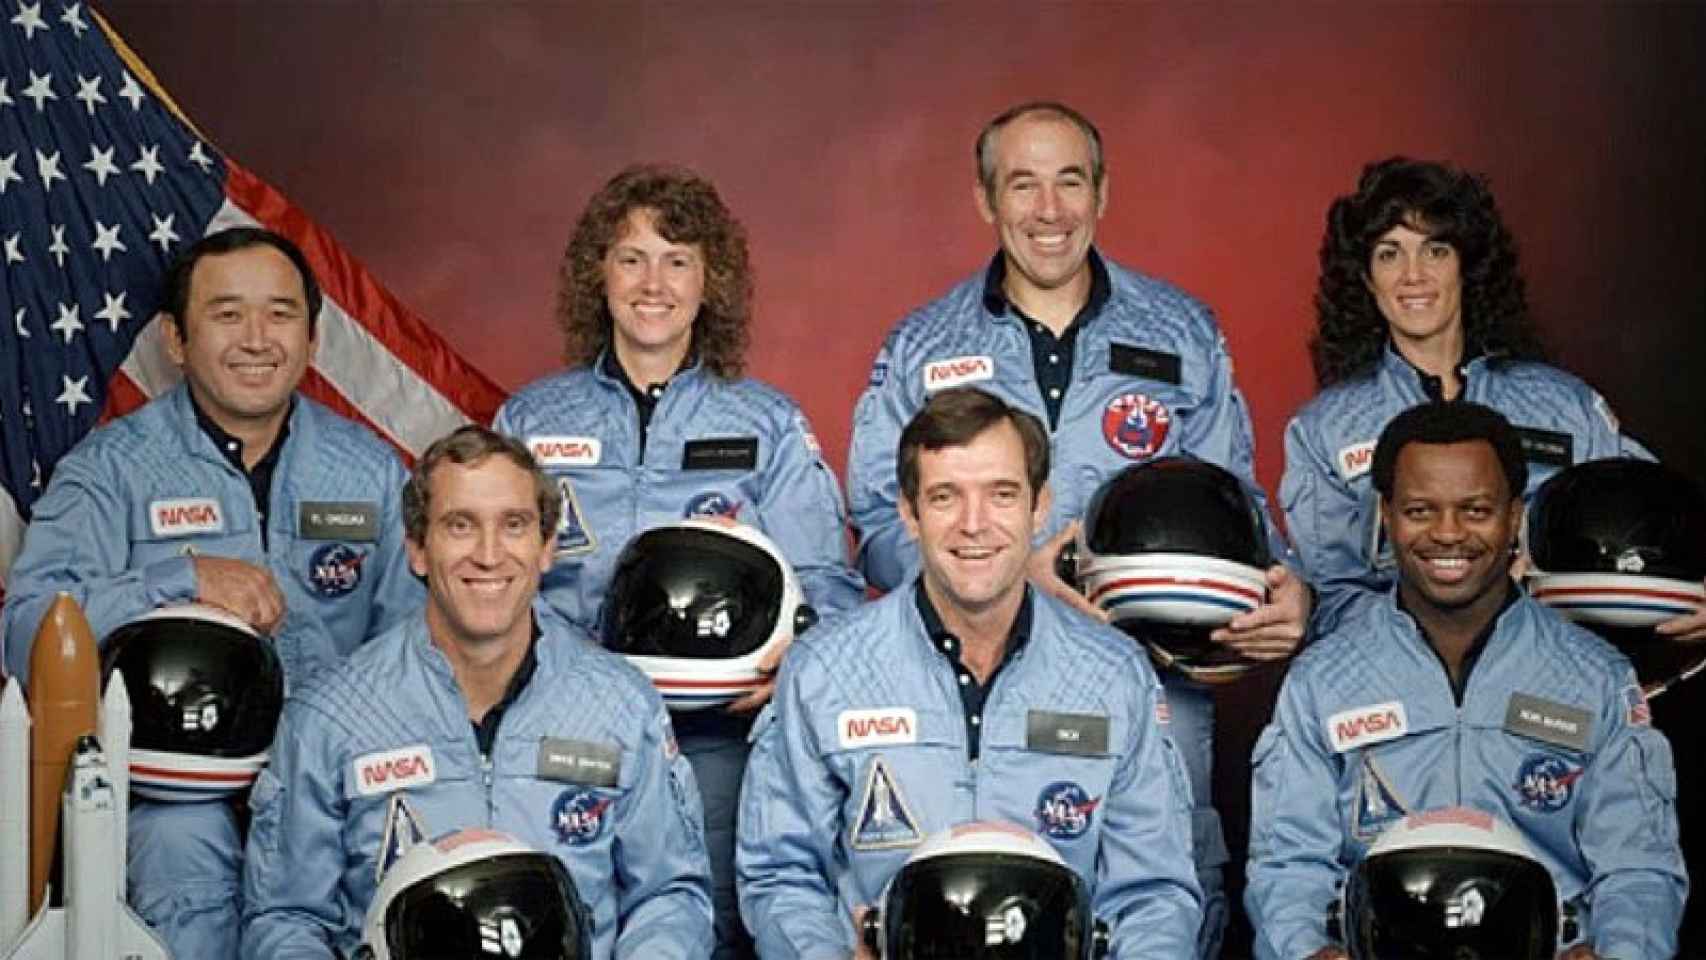 La última tripulación del Challenger, fallecida en el accidente del 28 de enero de 1986 / NASA